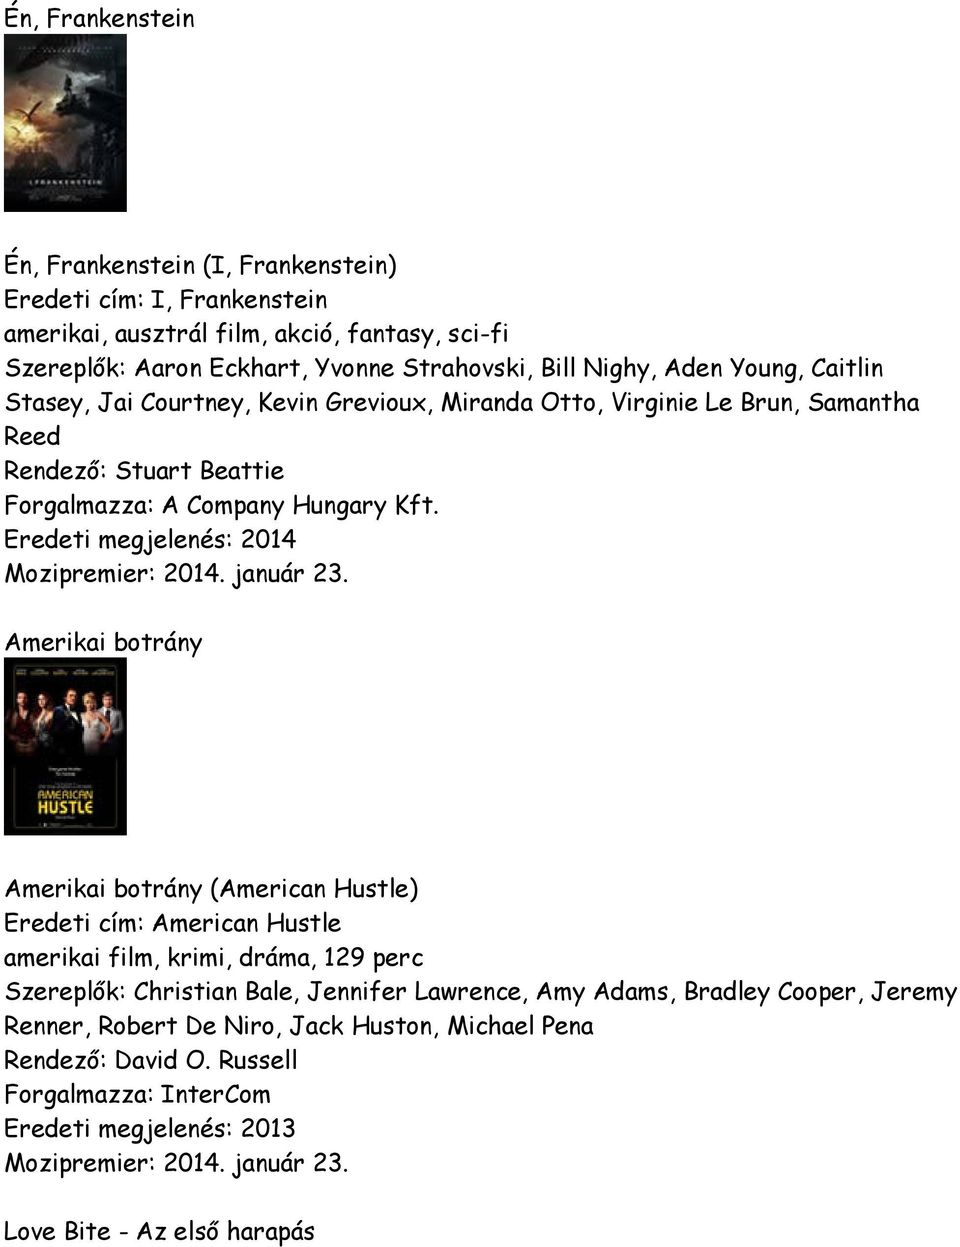 Eredeti megjelenés: 2014 Amerikai botrány Amerikai botrány (American Hustle) Eredeti cím: American Hustle amerikai film, krimi, dráma, 129 perc Szereplők: Christian Bale,